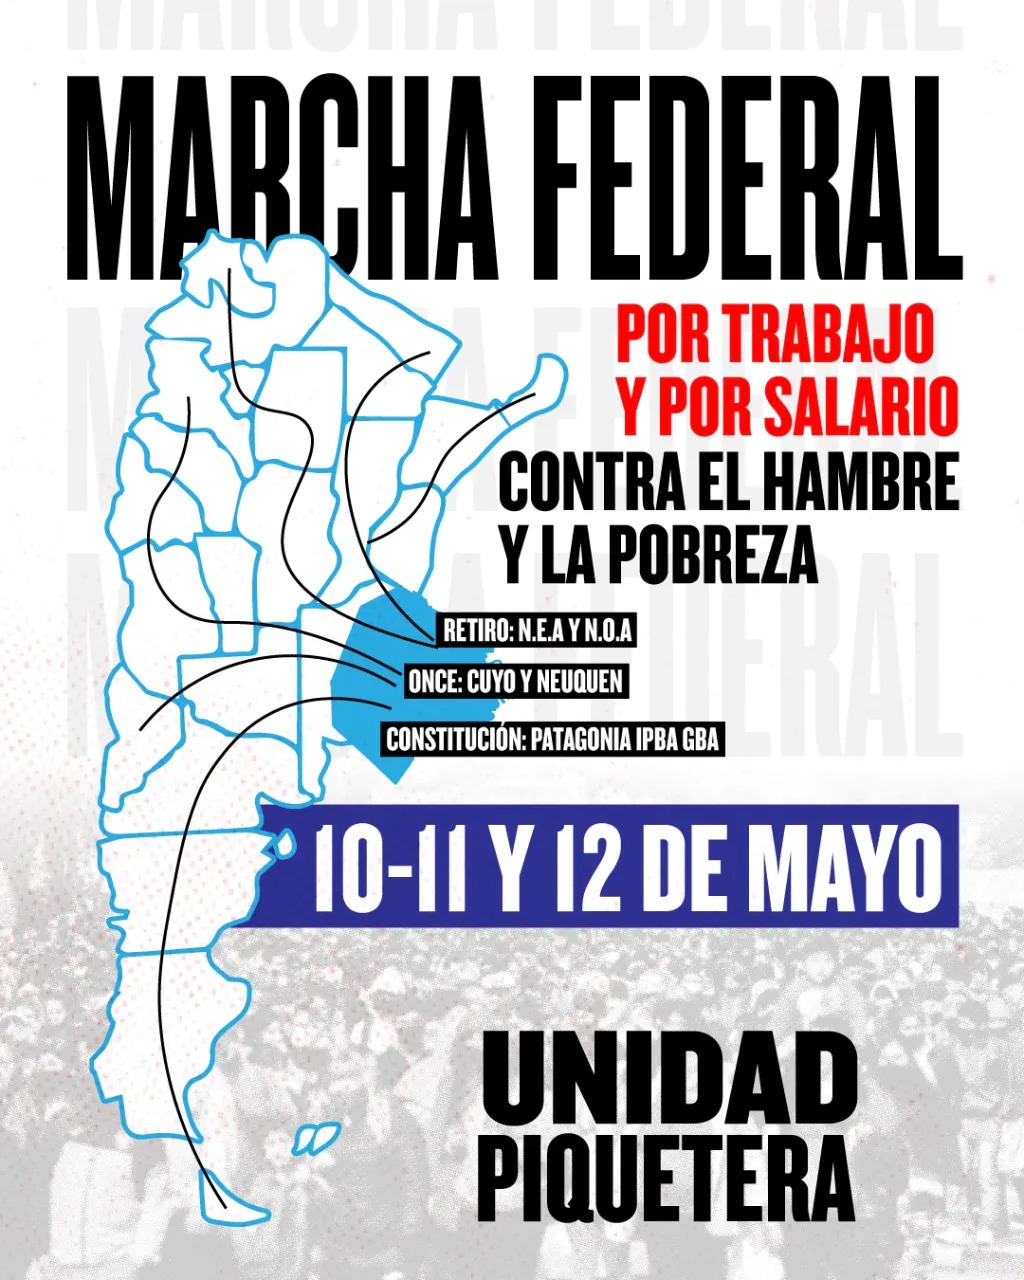 Martes, arranca la Marcha Federal de la Unidad Piquetera